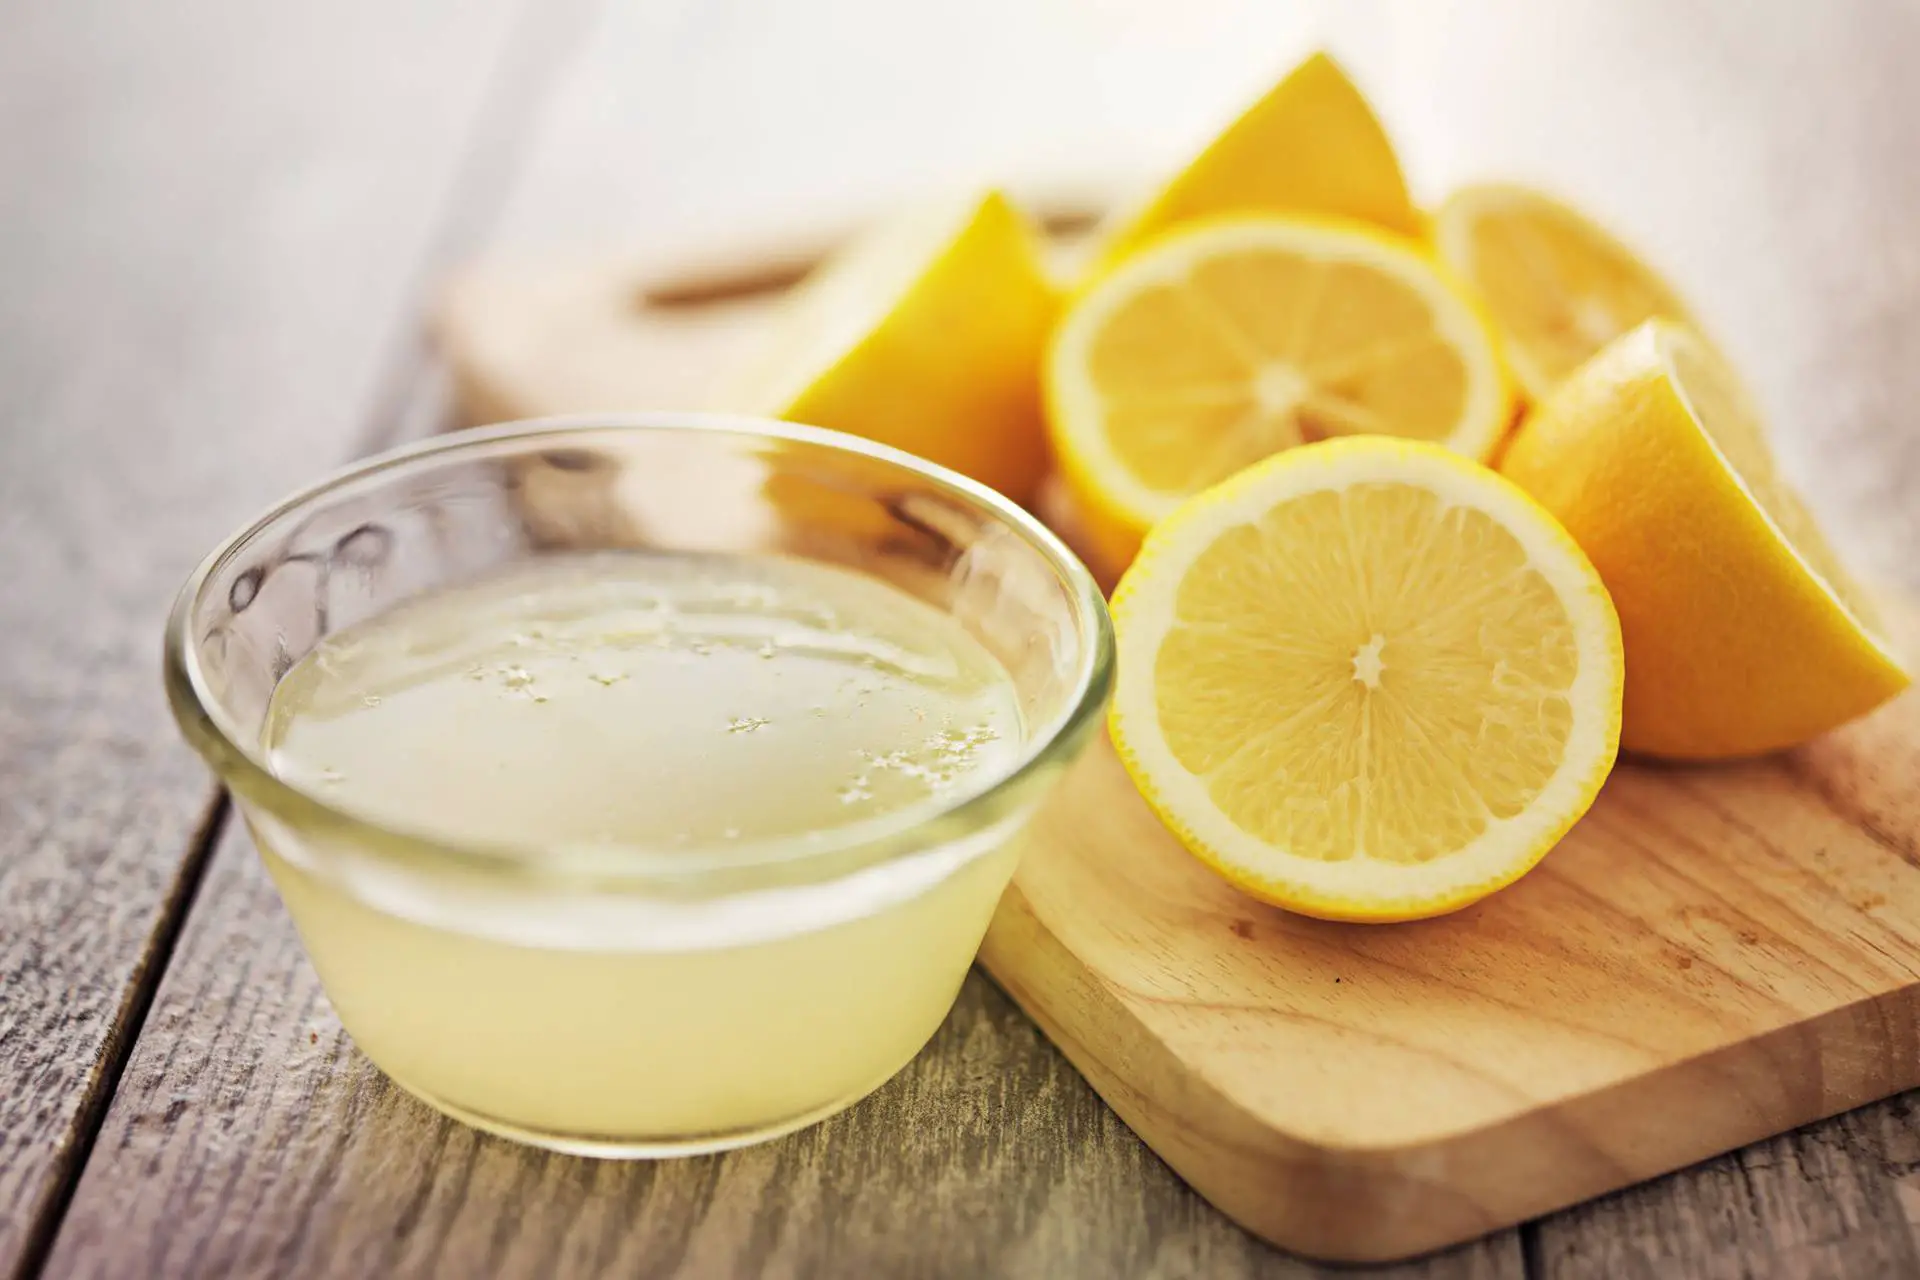 conserva los alimentos en buen estado con zumo de limon